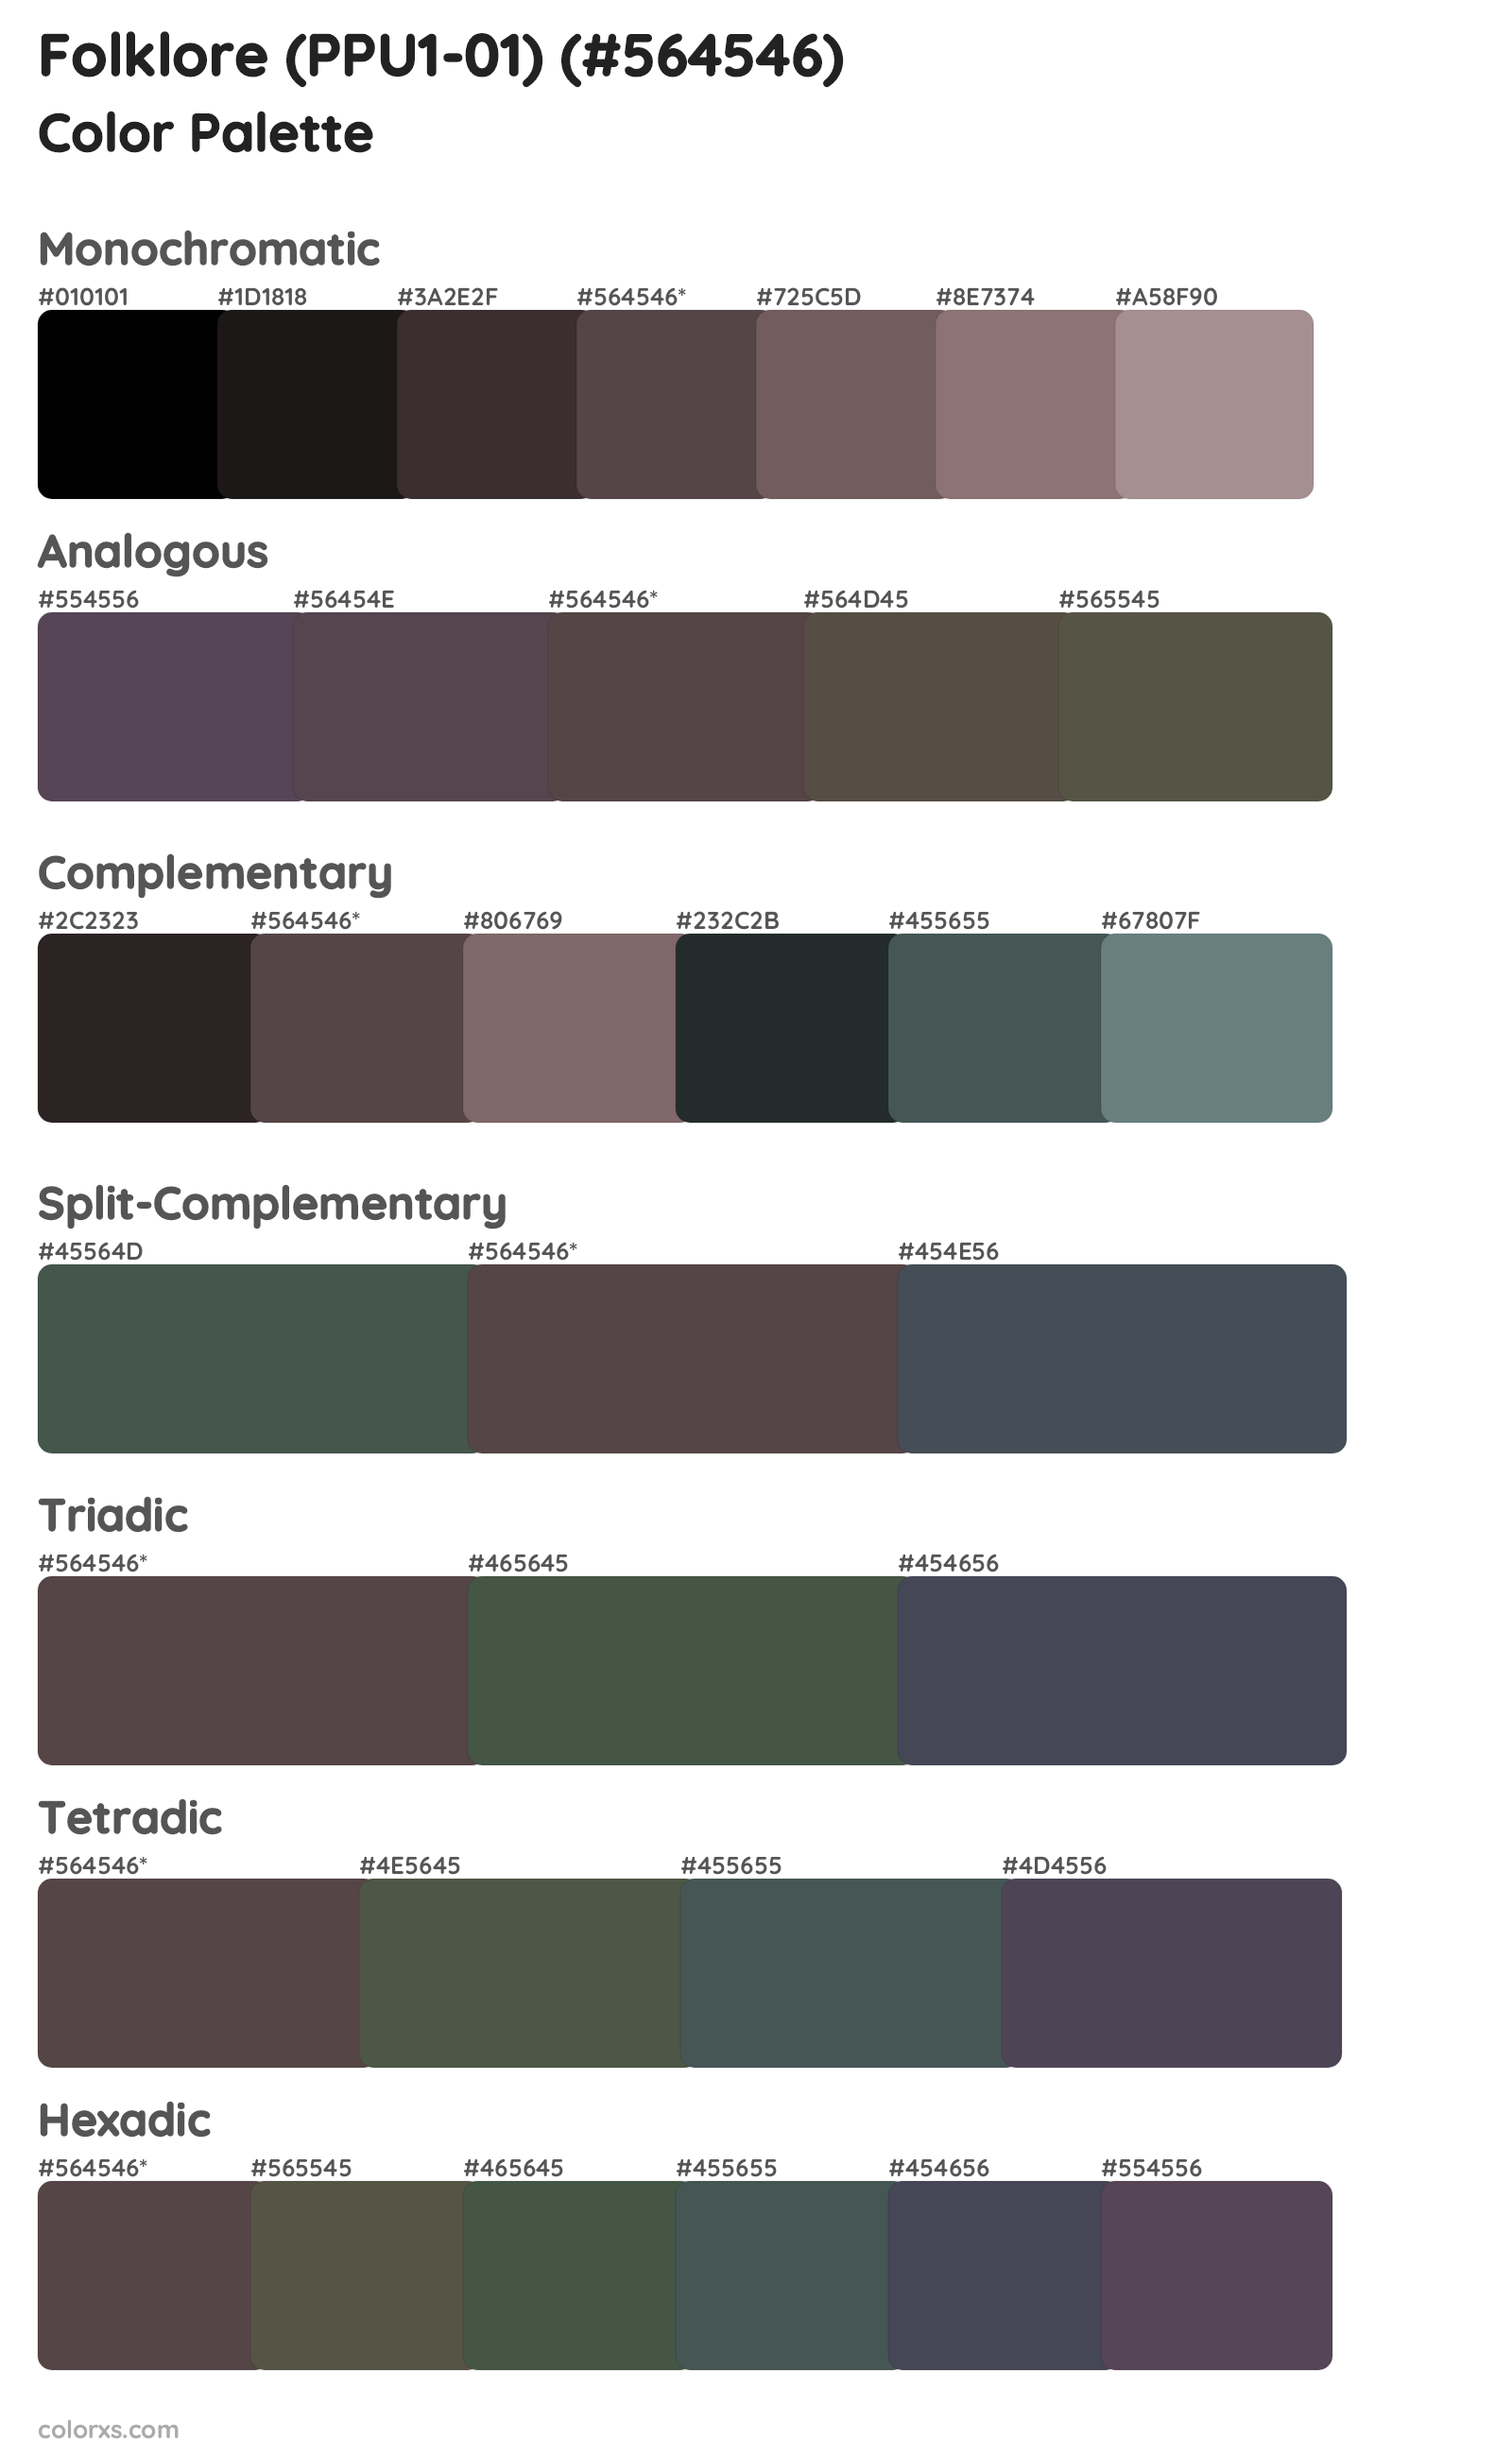 Folklore (PPU1-01) Color Scheme Palettes